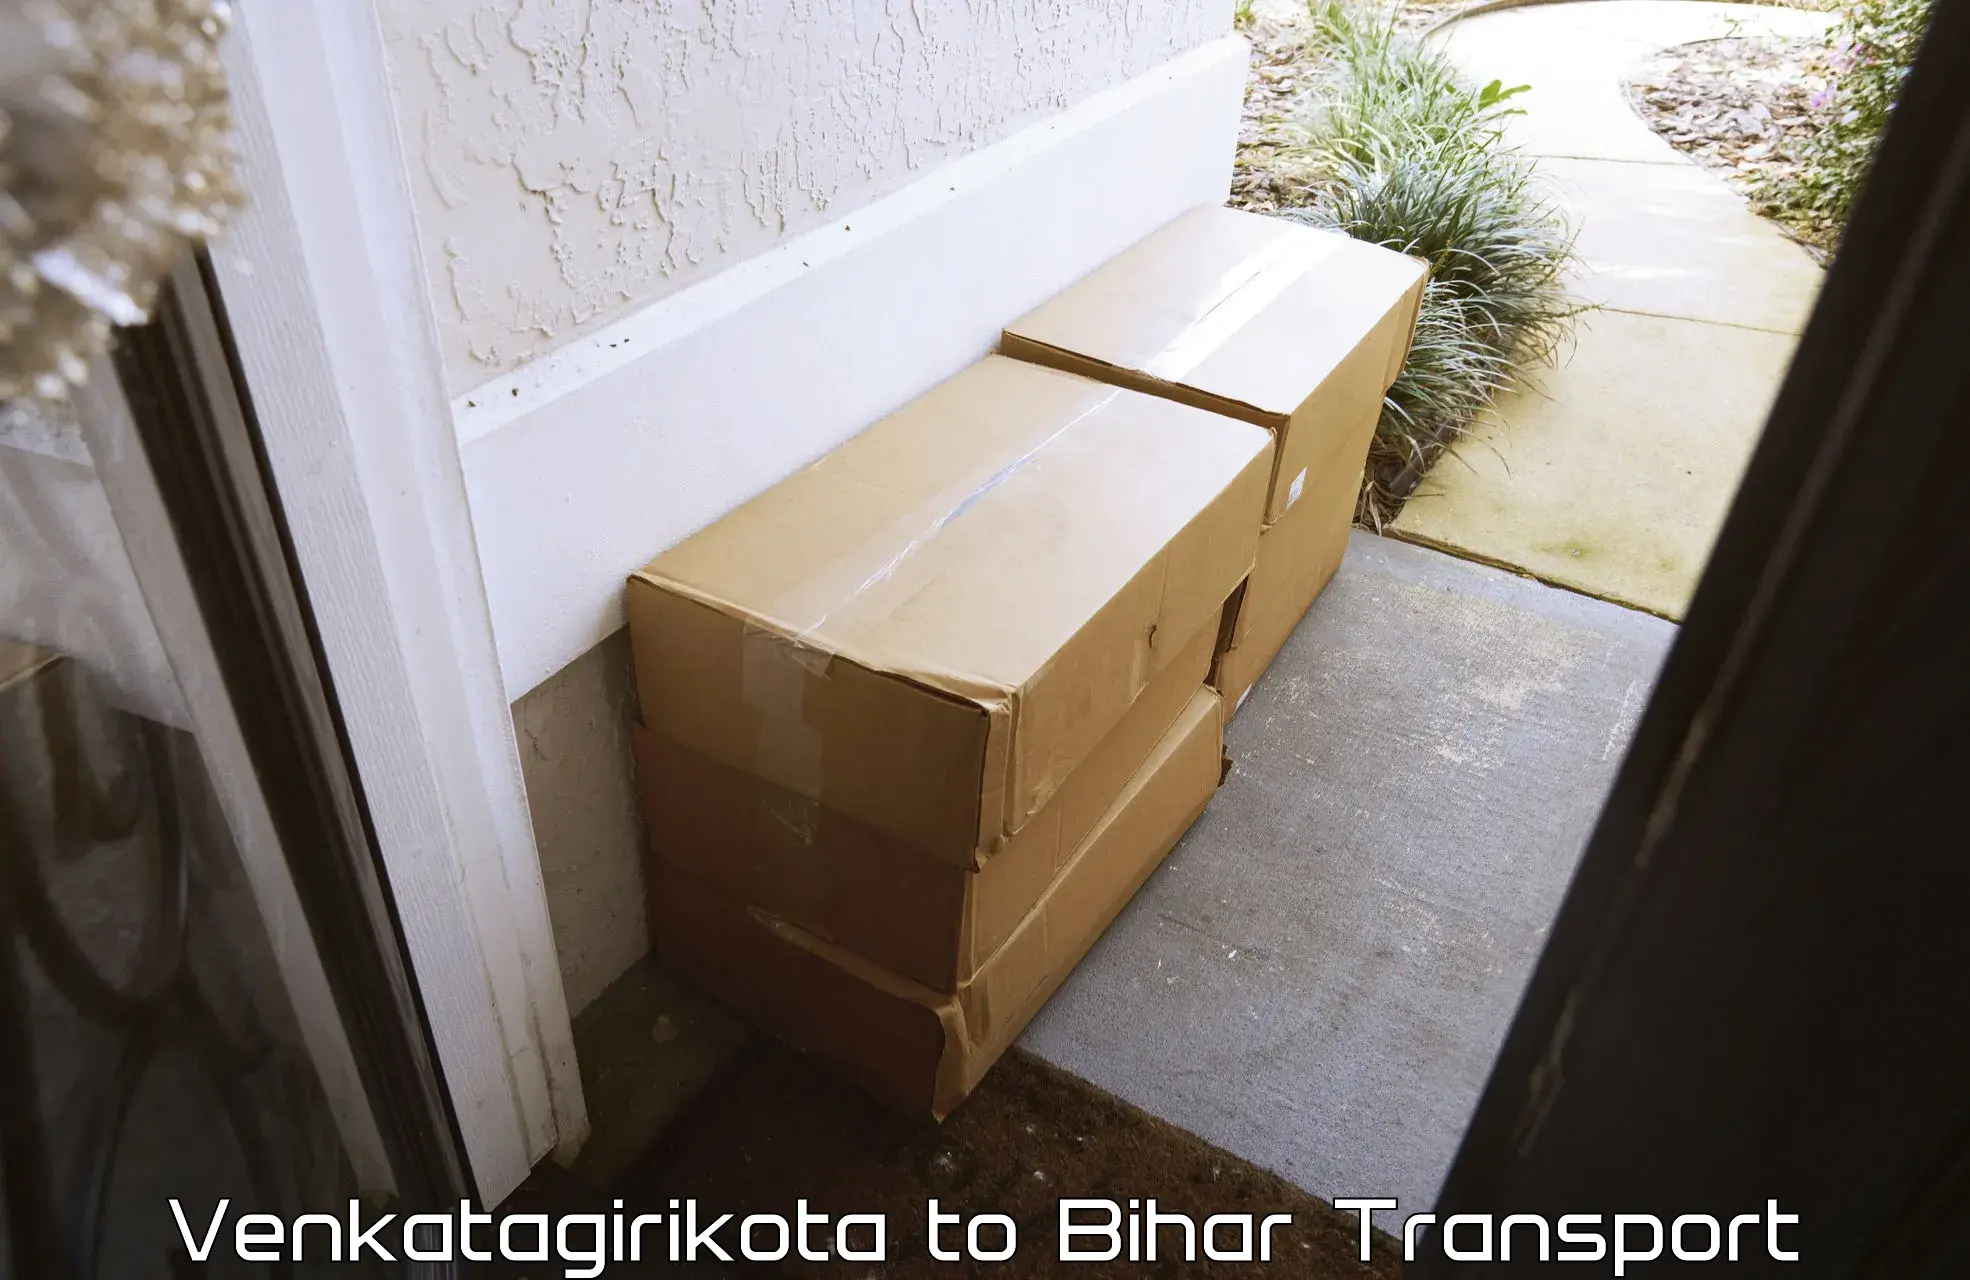 Cargo transport services Venkatagirikota to Katoria